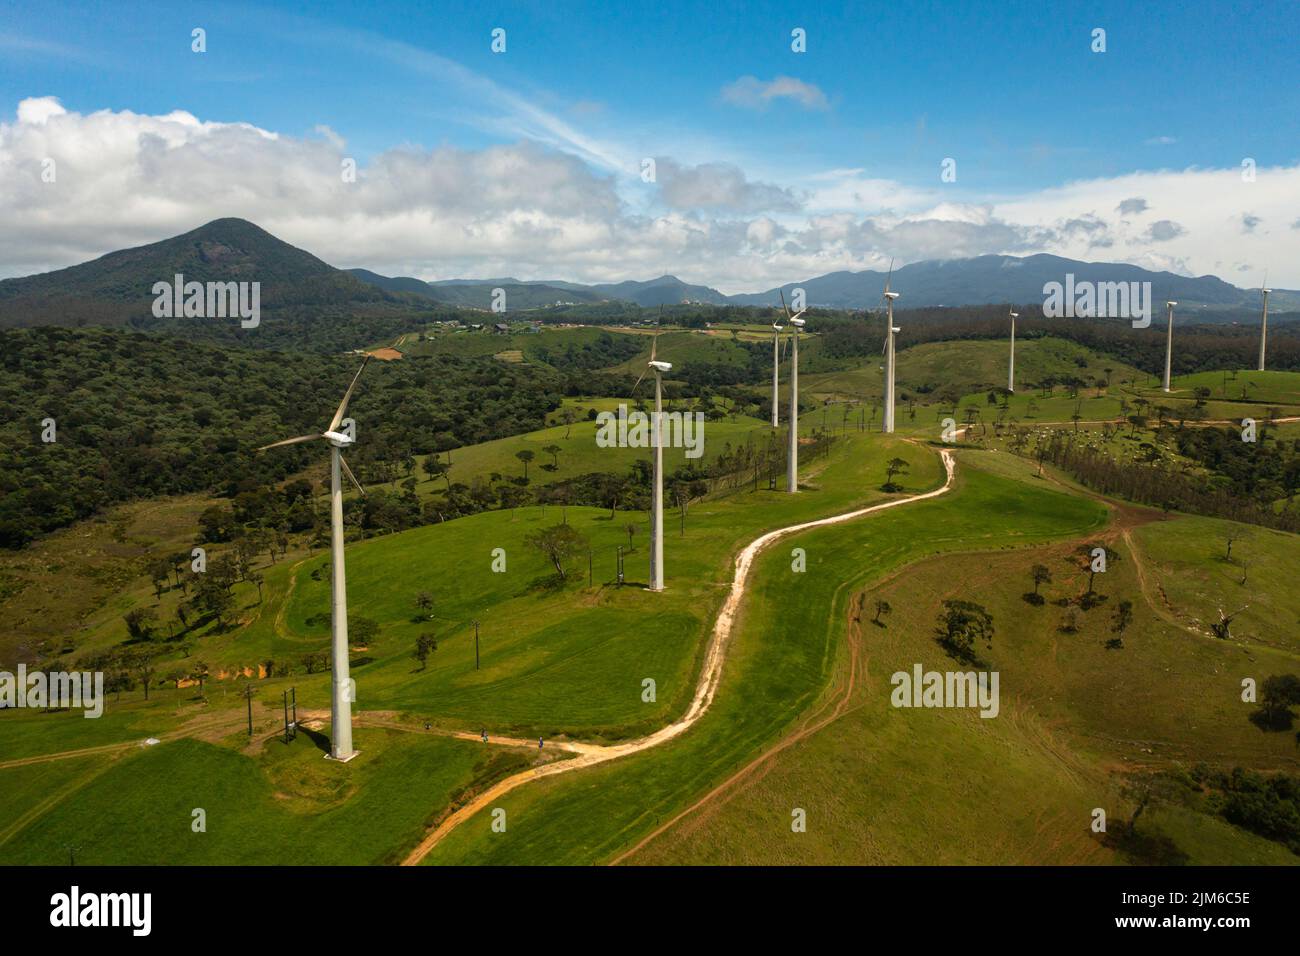 Wind Farm con turbine eoliche sulle verdi colline della campagna. Impianto eolico. Ambewela, Sri Lanka. Foto Stock